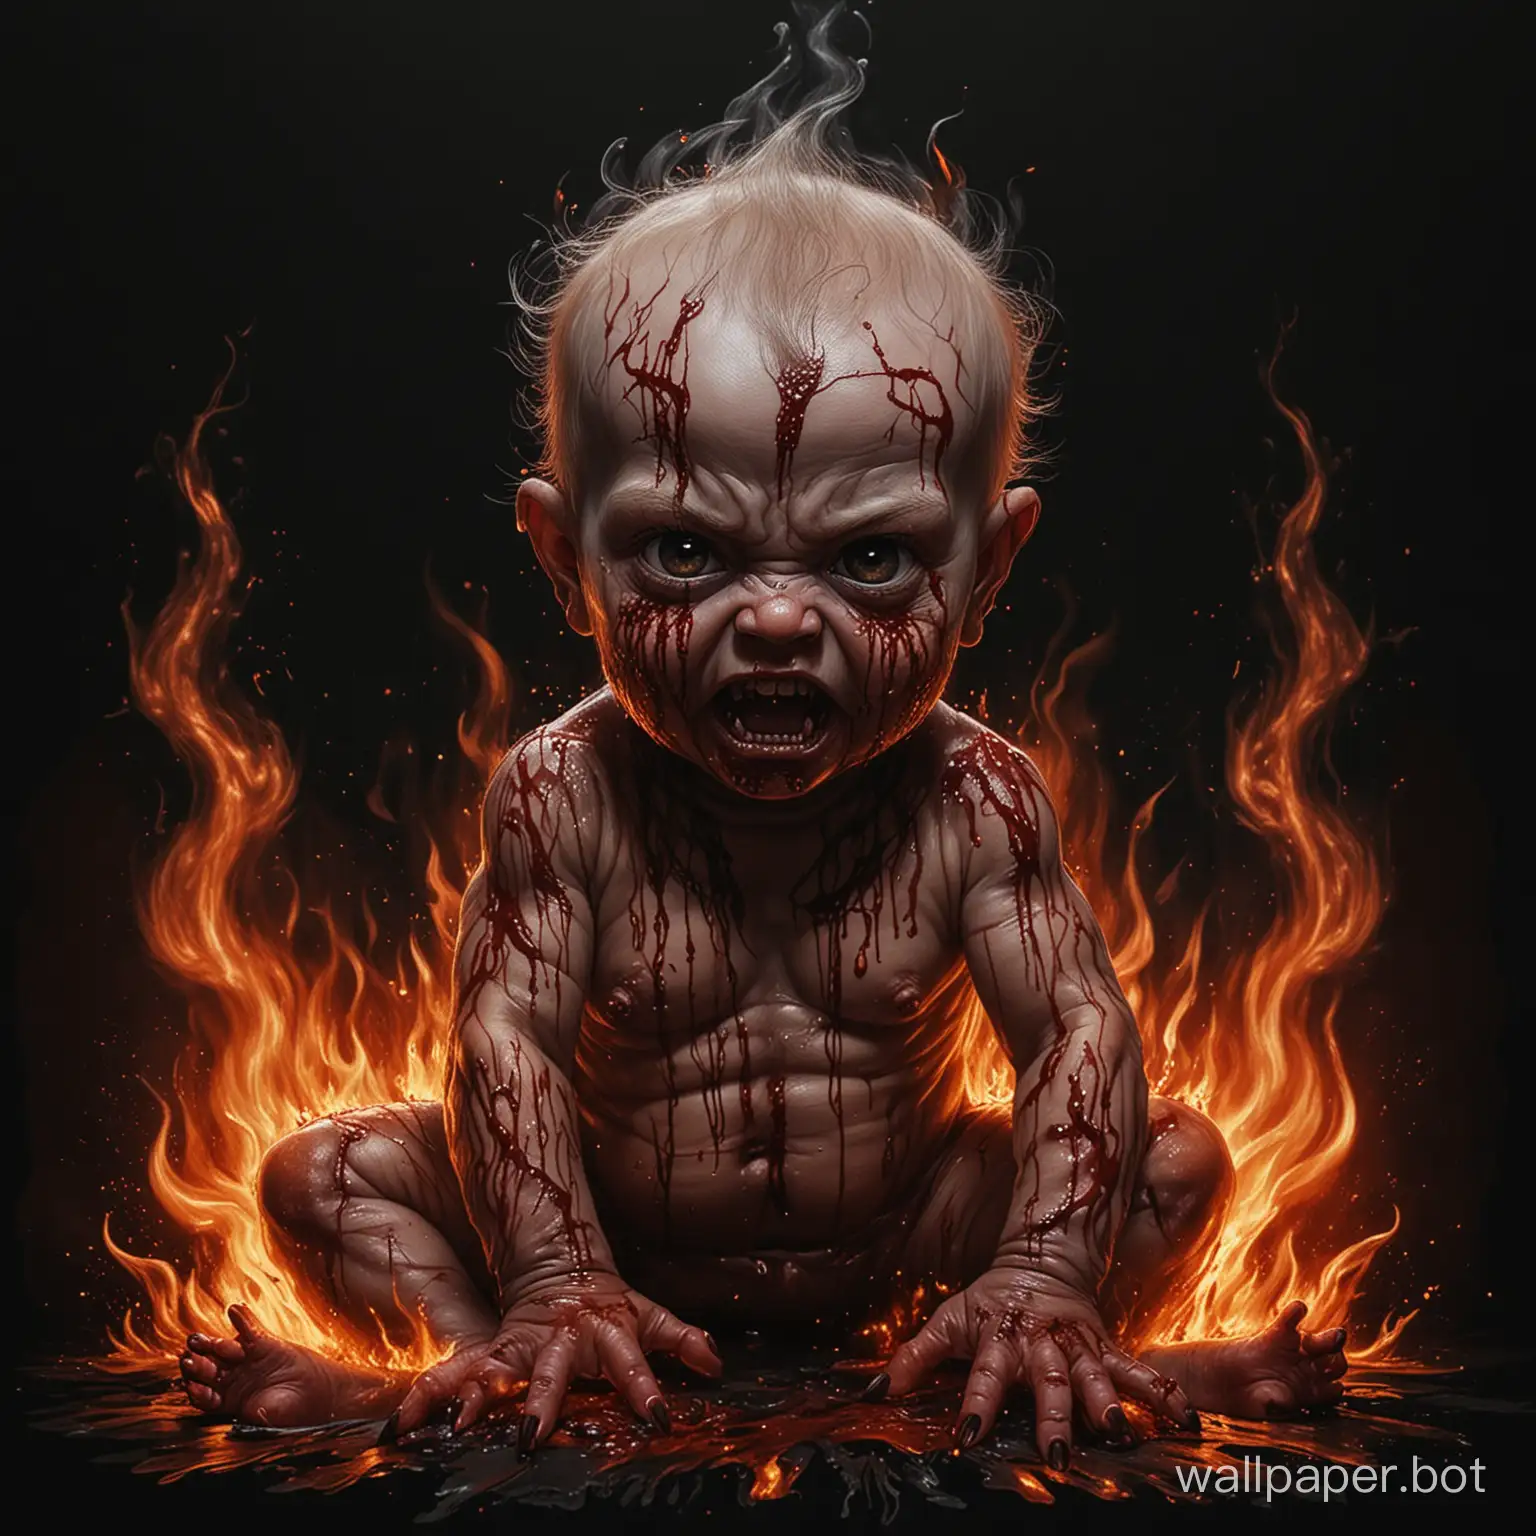 нарисуй на черном фоне страшного, ужасного, демонического младенца, который весь в крови и объят пламенем